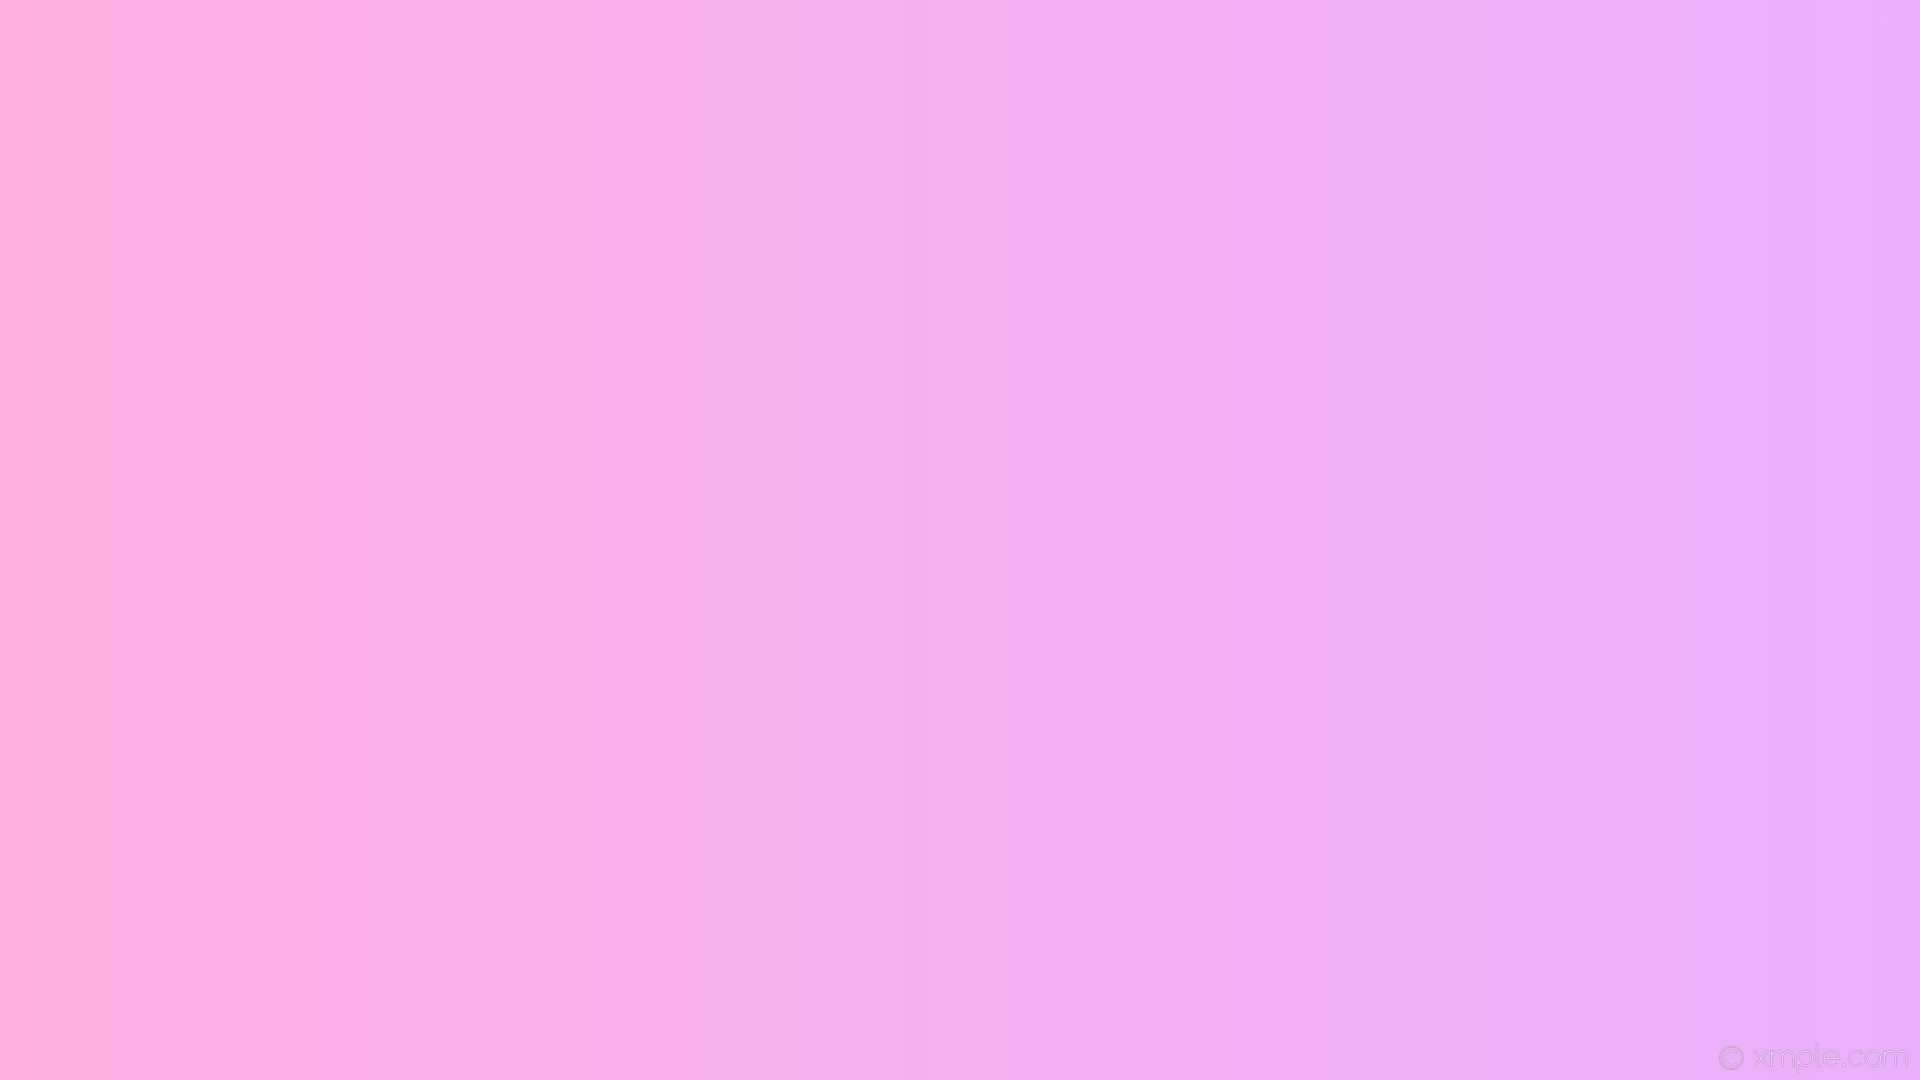 1920x1080 wallpaper magenta pink gradient linear light magenta light pink #ebb0fd  #fdb0e1 0Â°